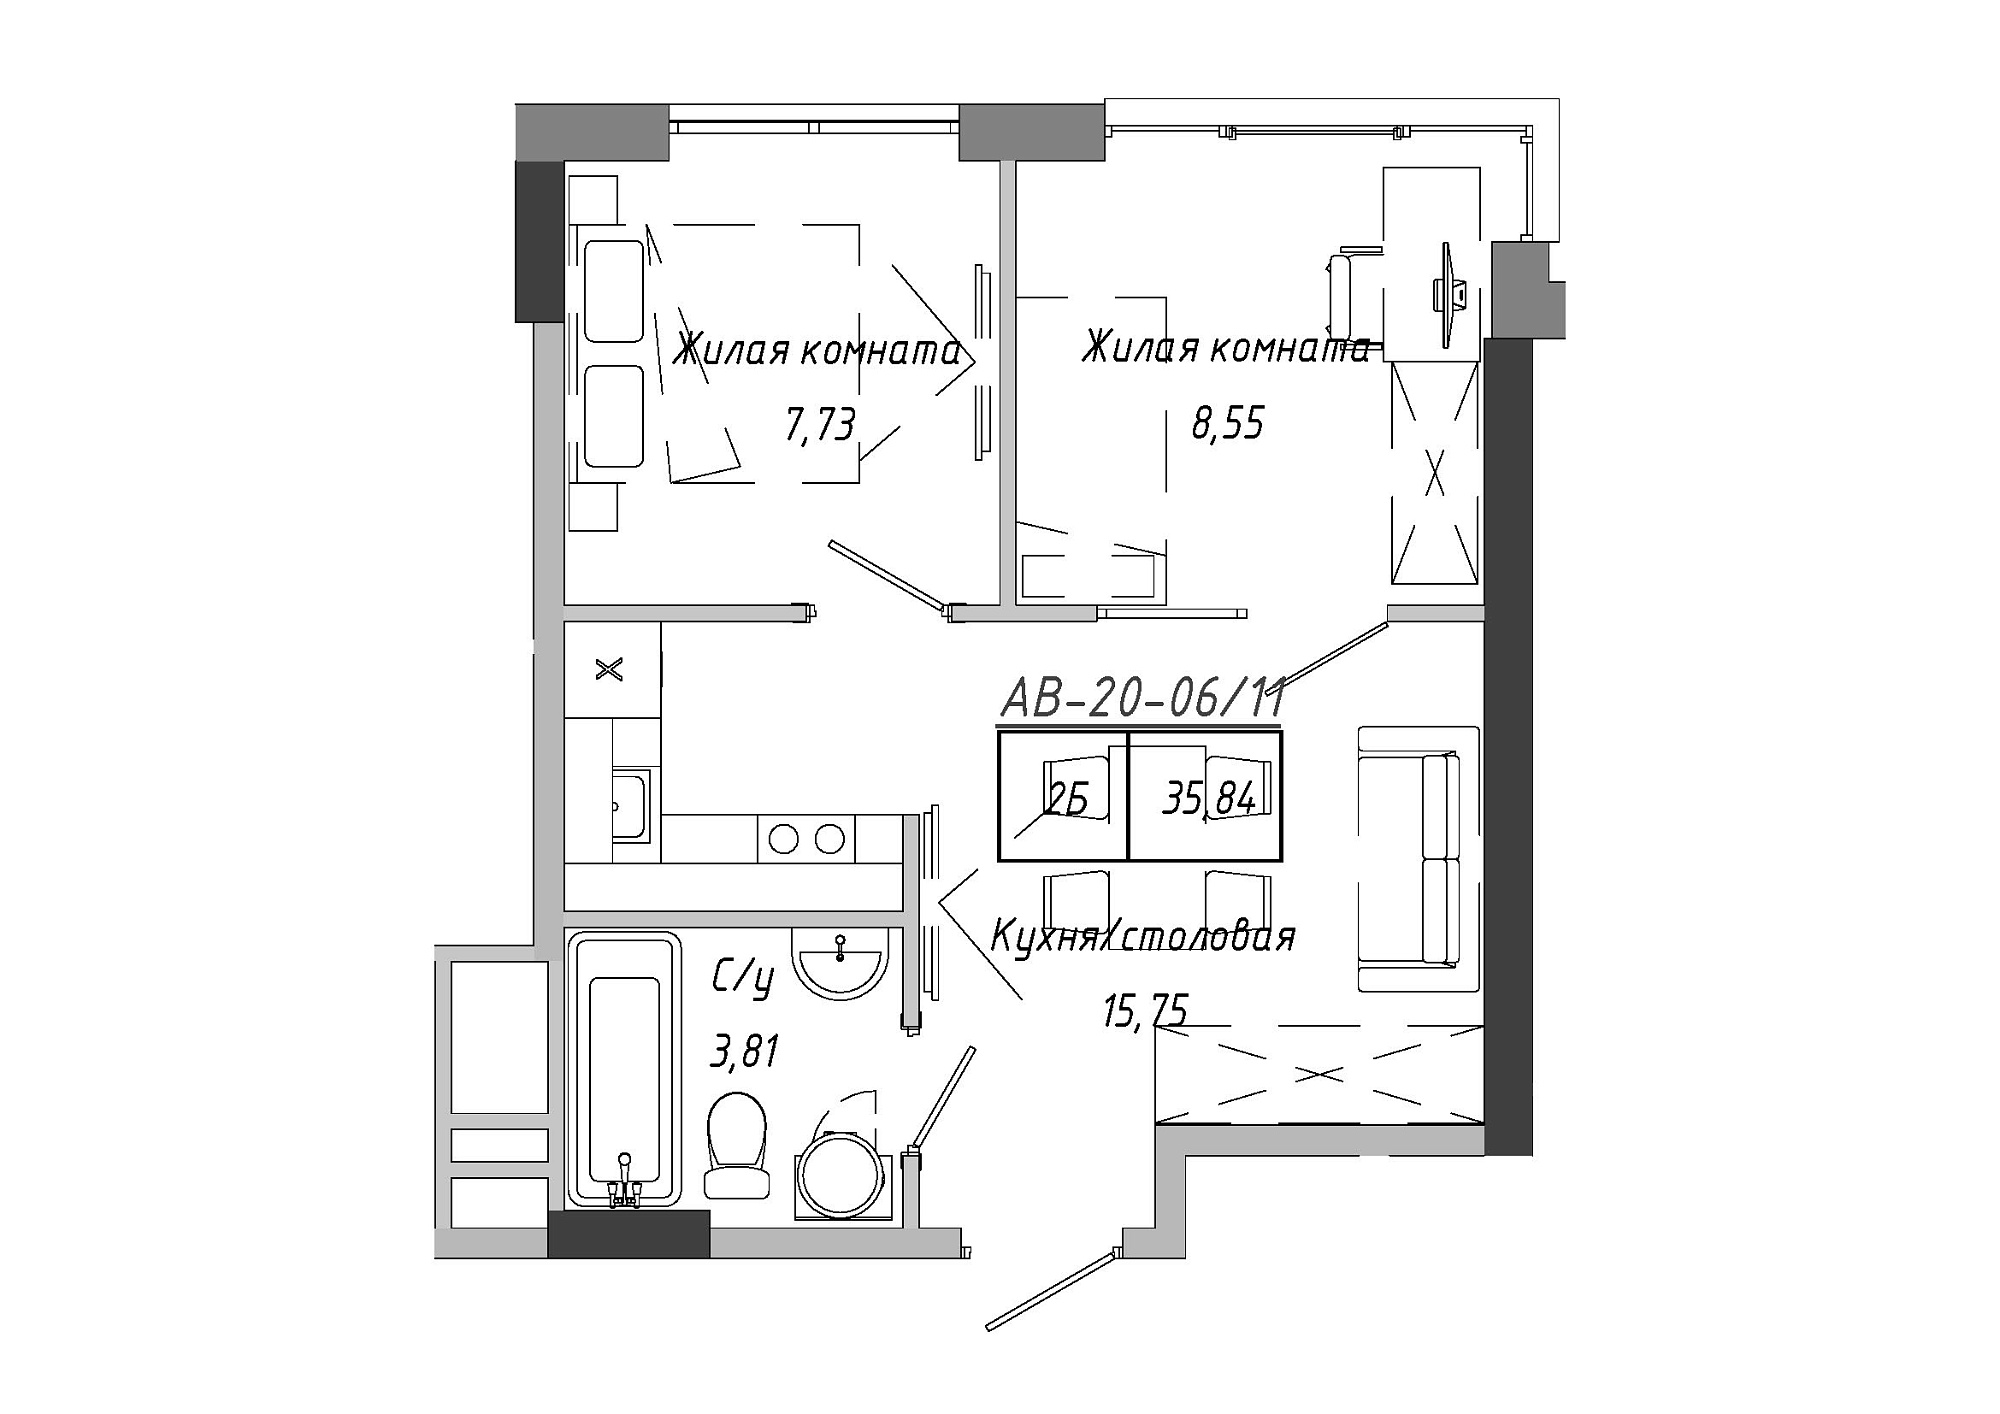 Планировка 2-к квартира площей 36.12м2, AB-20-06/00011.